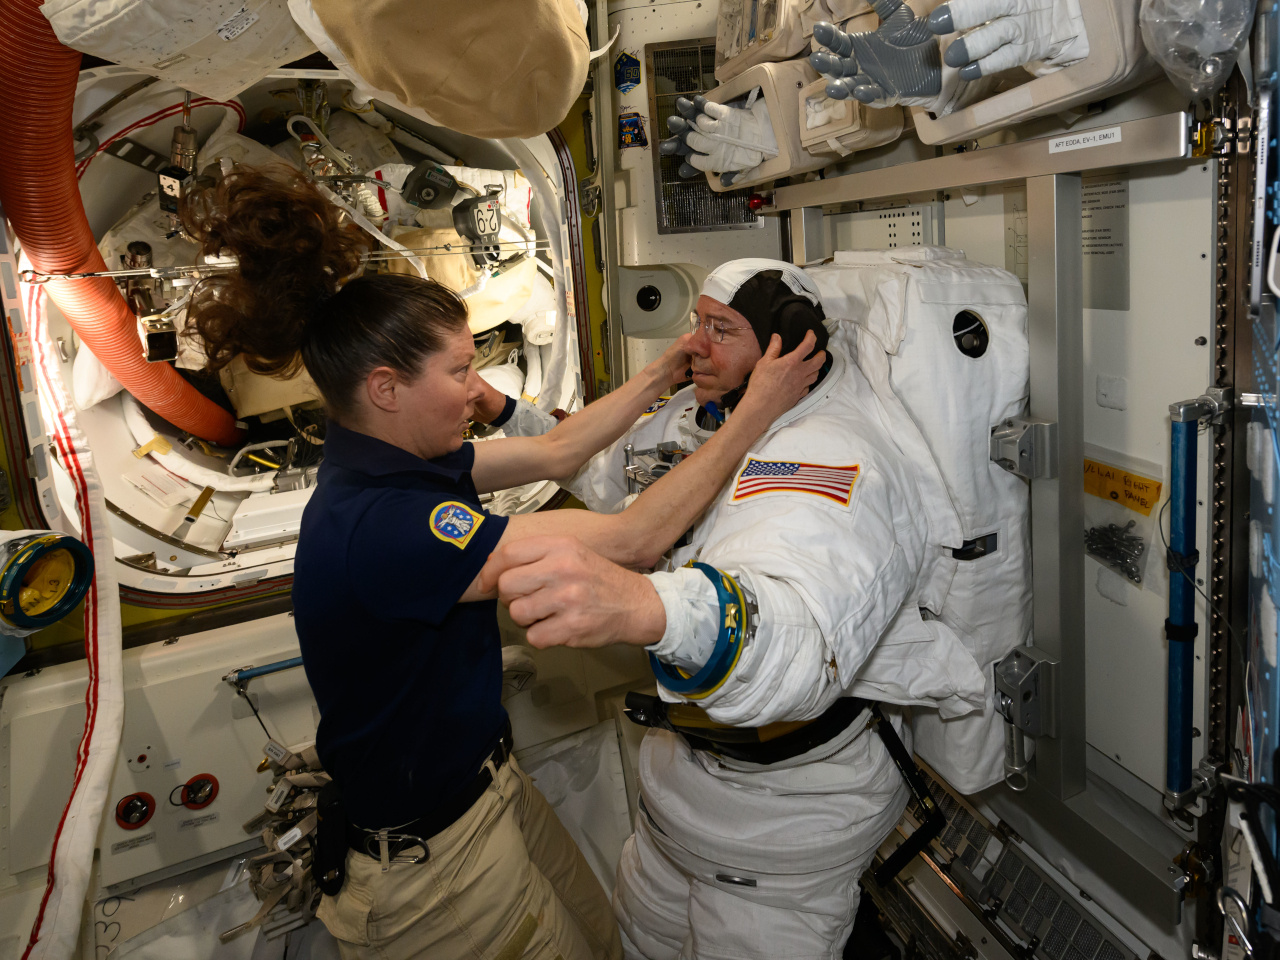 ISSで「宇宙服の不快感」から船外活動を中止、今後の予定も変更へ